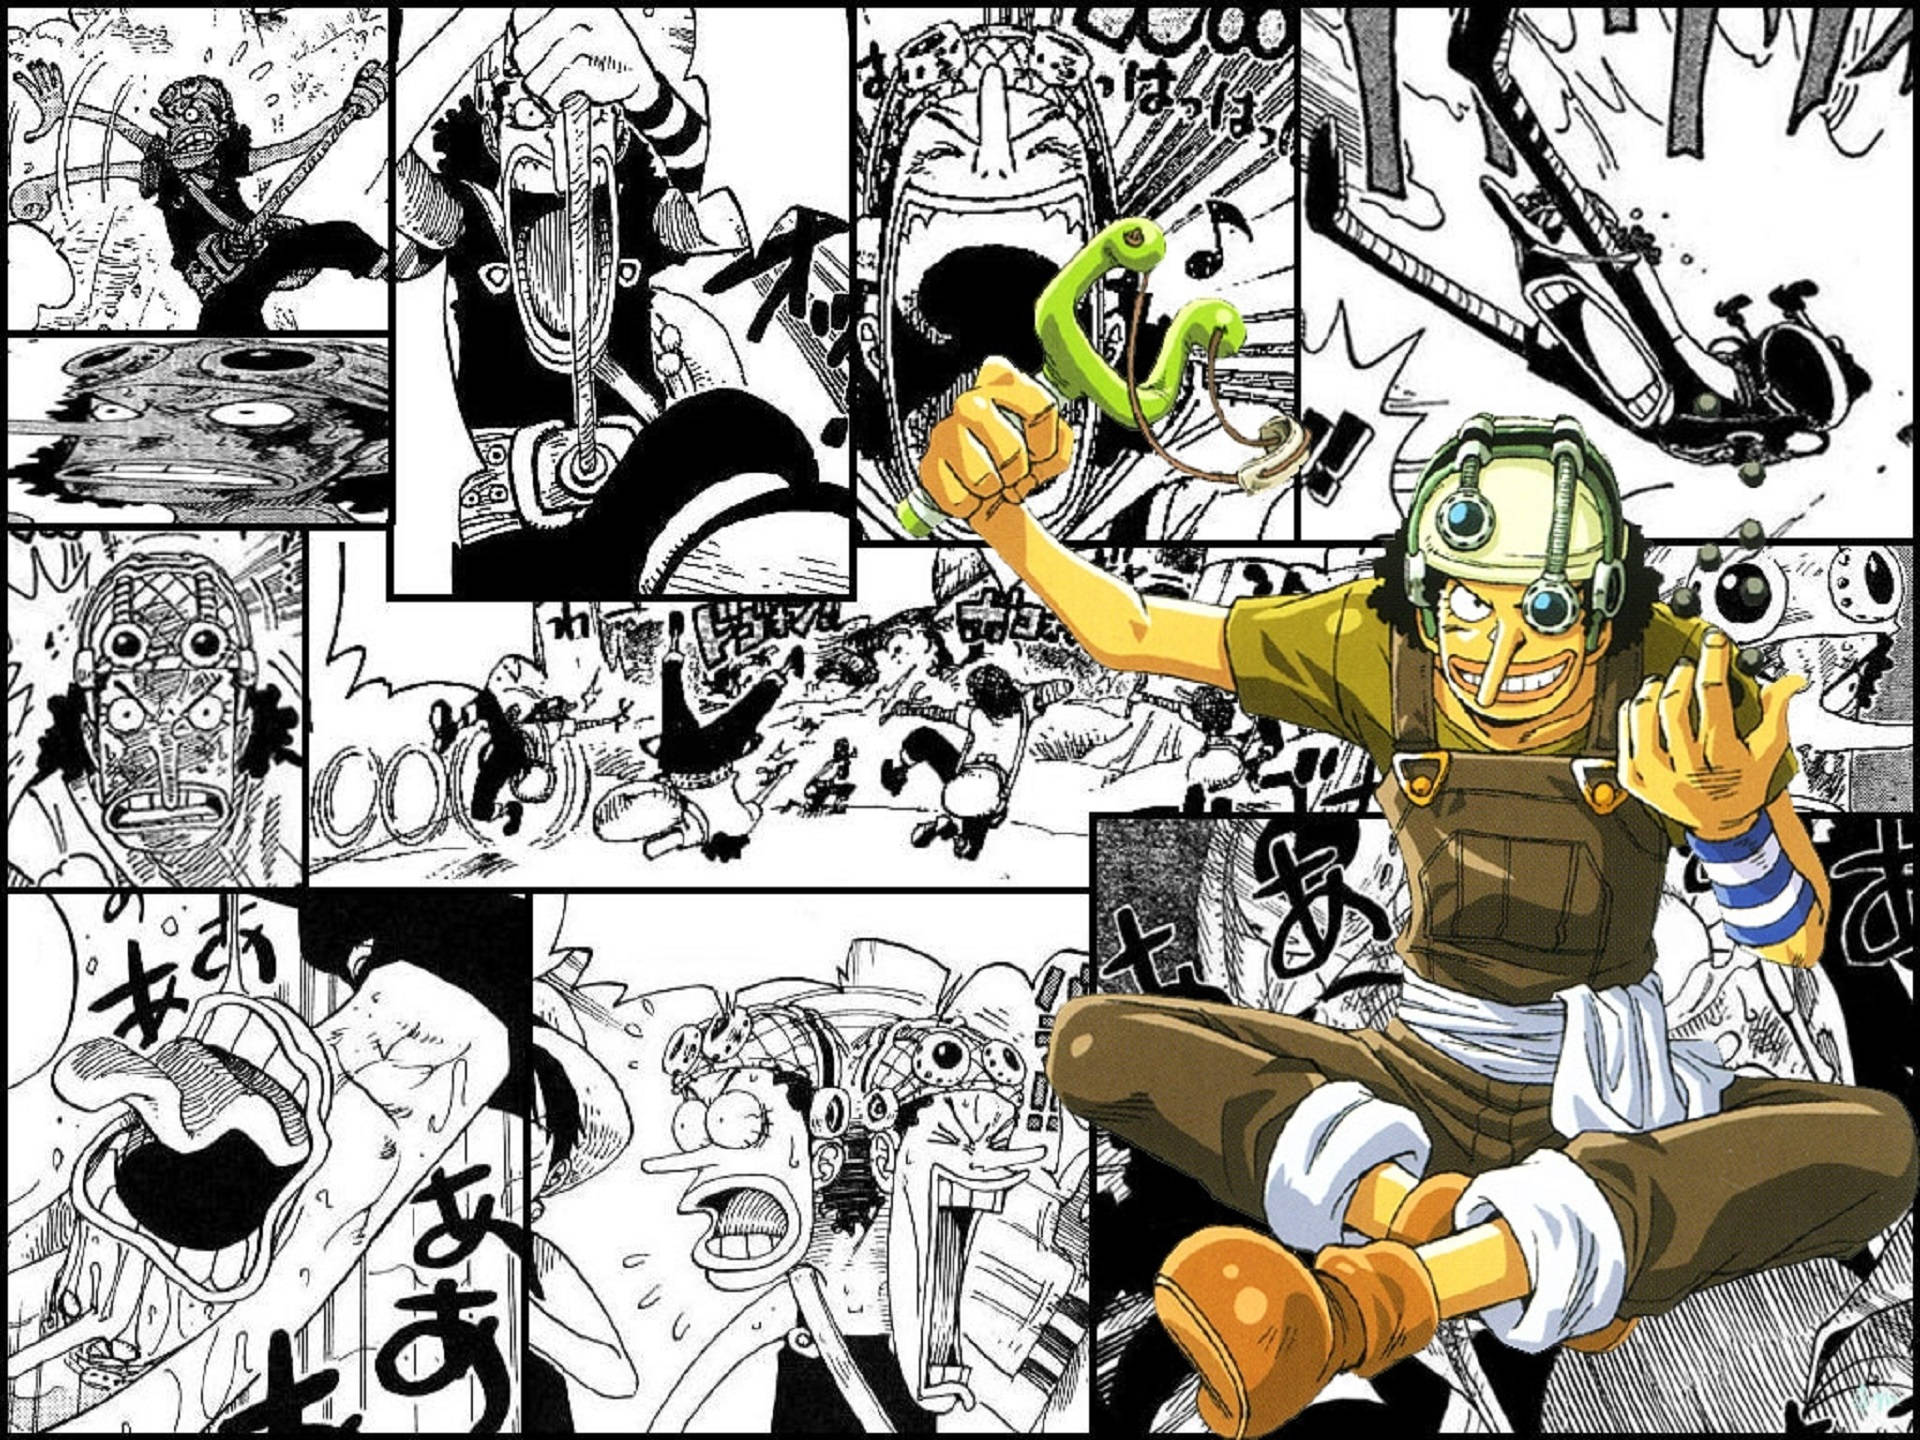 Usopp Funny Moments Manga Panel Background